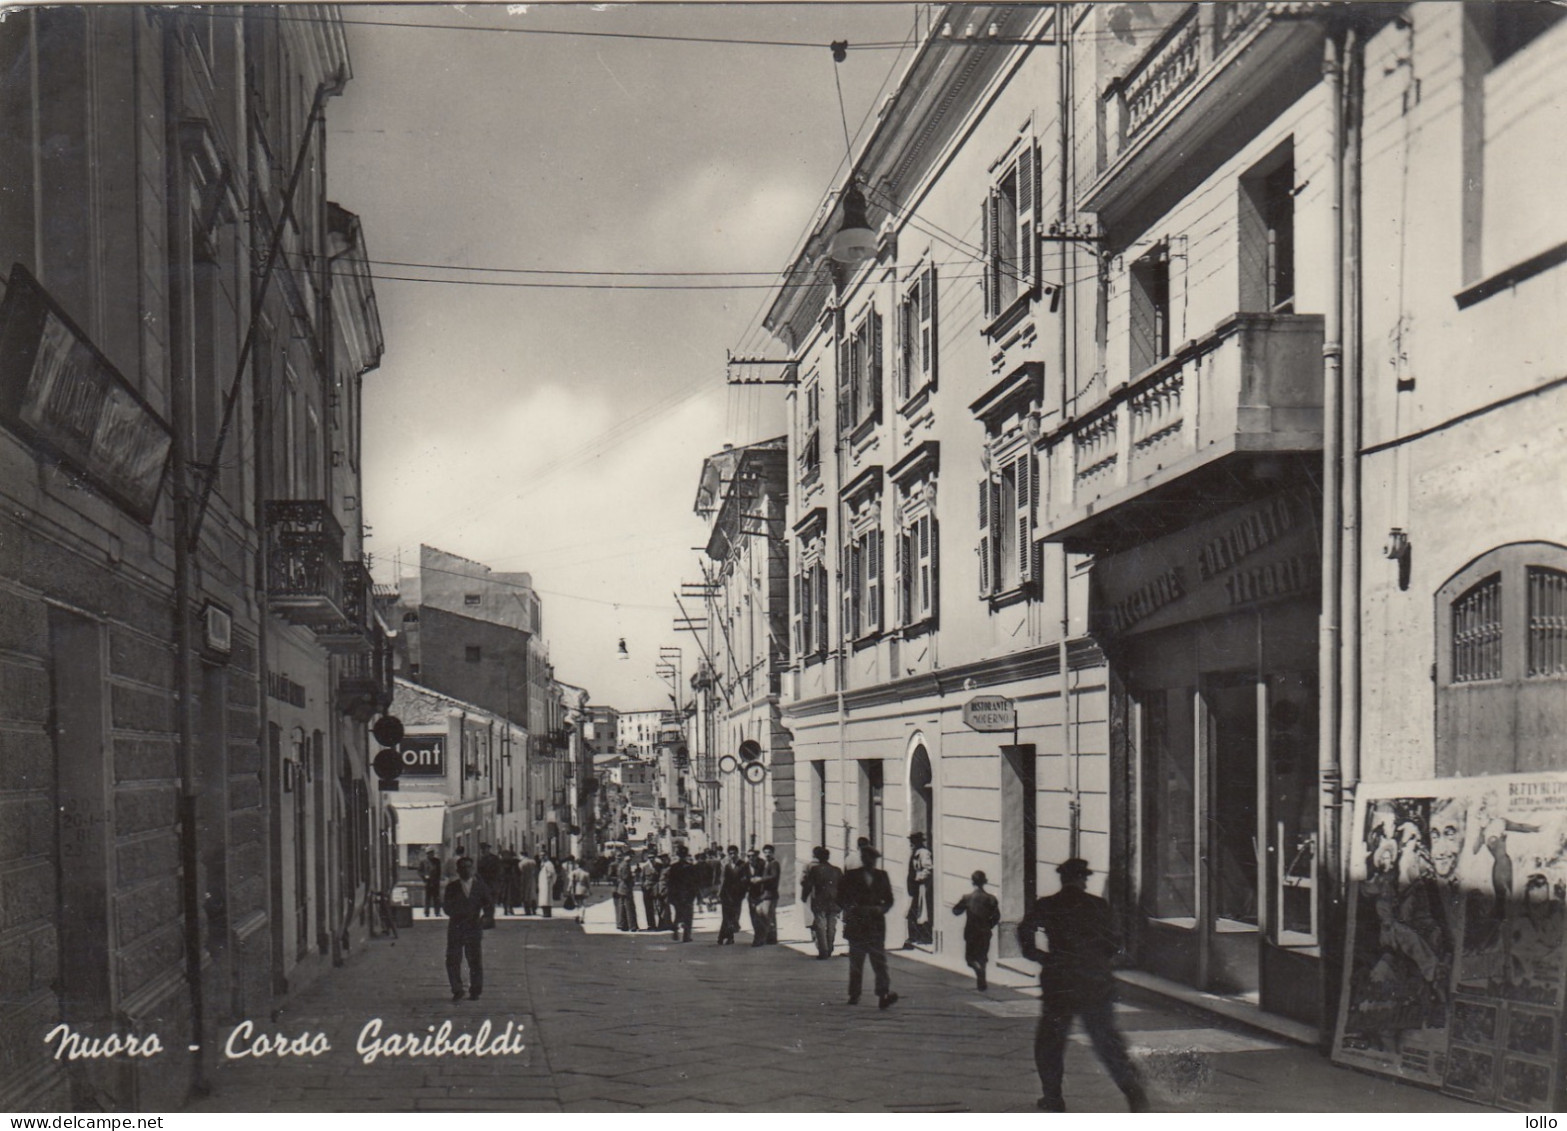 Sardegna   -   Nuoro   -   Corso Garibaldi    - F. Grande  -  Viagg   -  Bella Animata - Nuoro